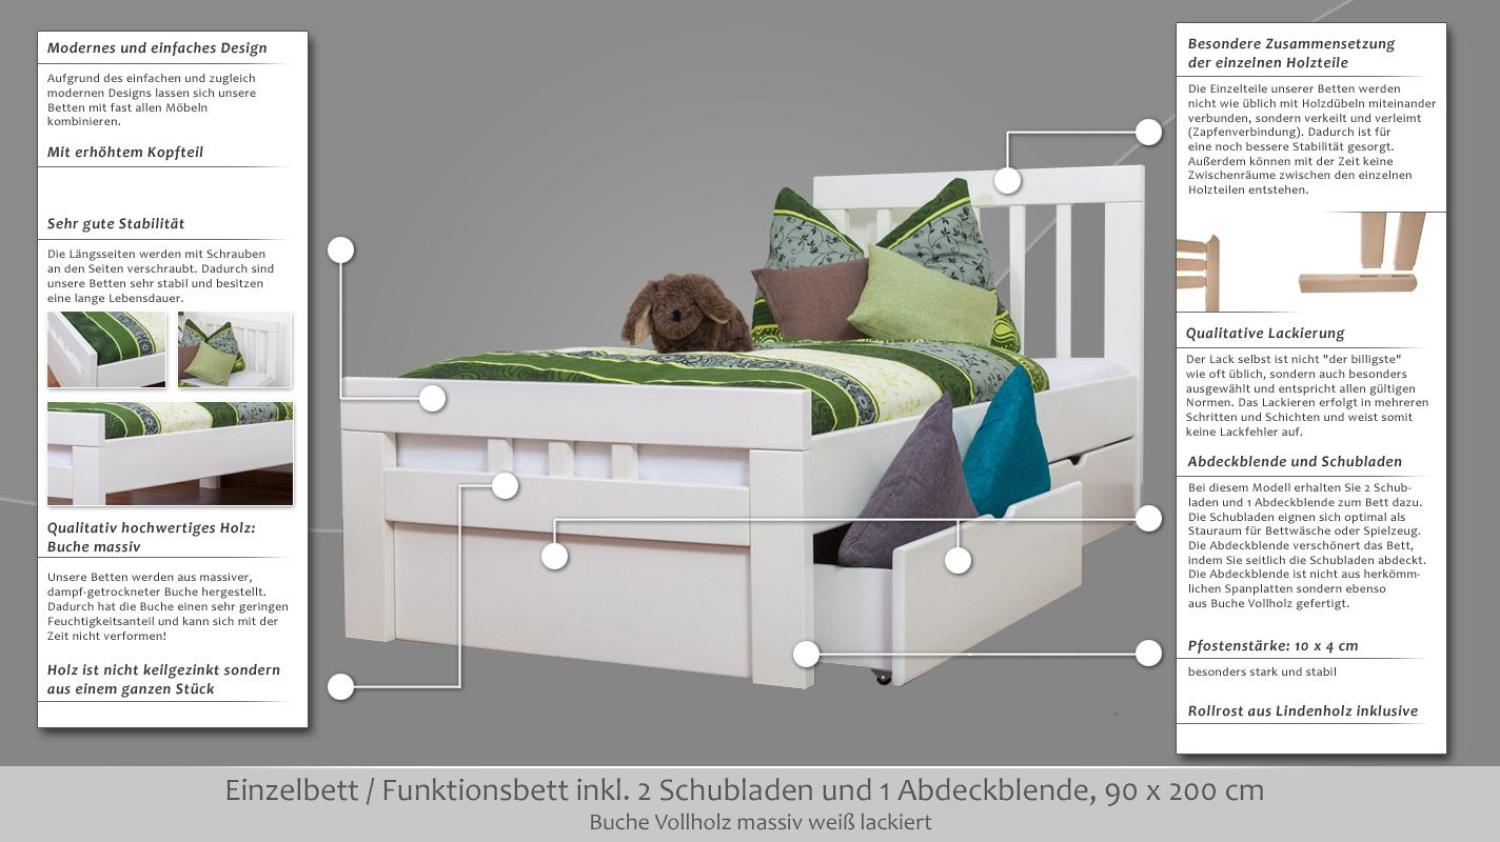 Einzelbett Easy Premium Line K8 inkl. 2 Schubladen, 90 x 200 cm Buche Vollholz massiv weiß lackiert Bild 1